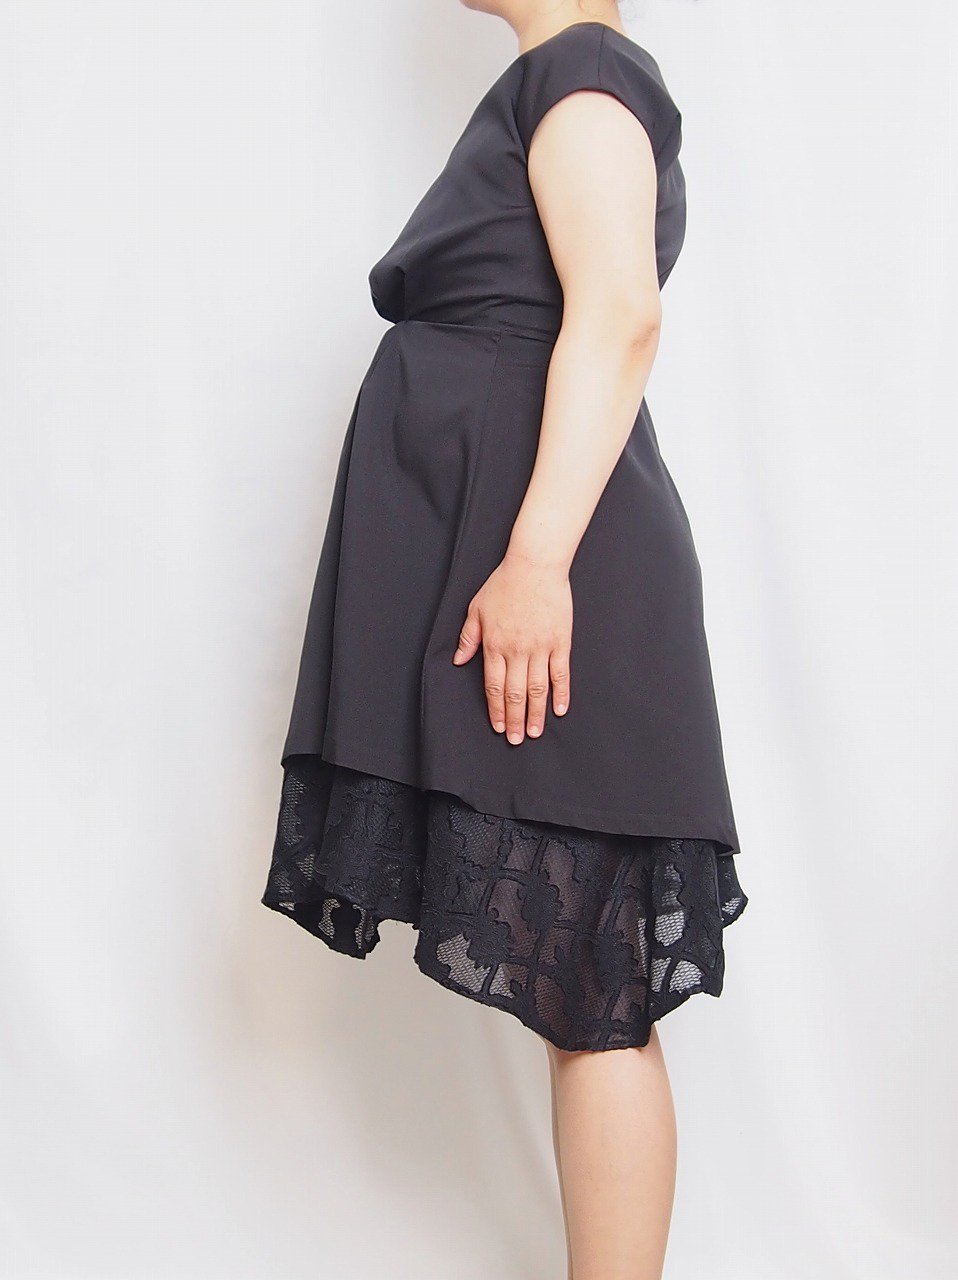 マタニティ用レンタルドレス,妊娠7ヶ月,ブラック,横